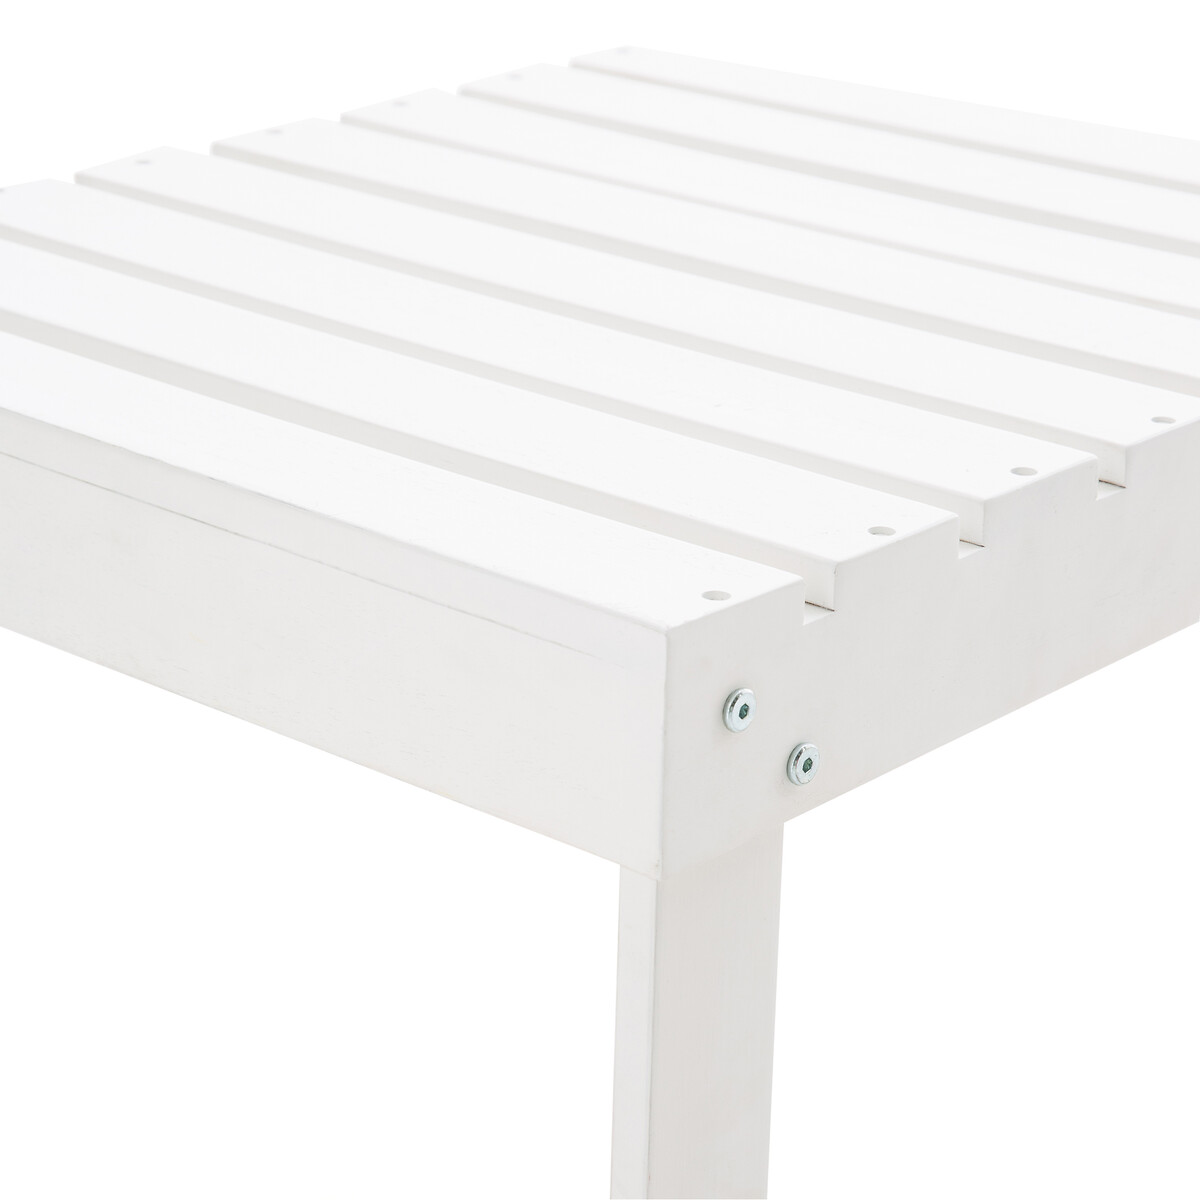 Подставка La Redoute Для ног низкий столик в стиле адирондак Zeda единый размер белый - фото 3